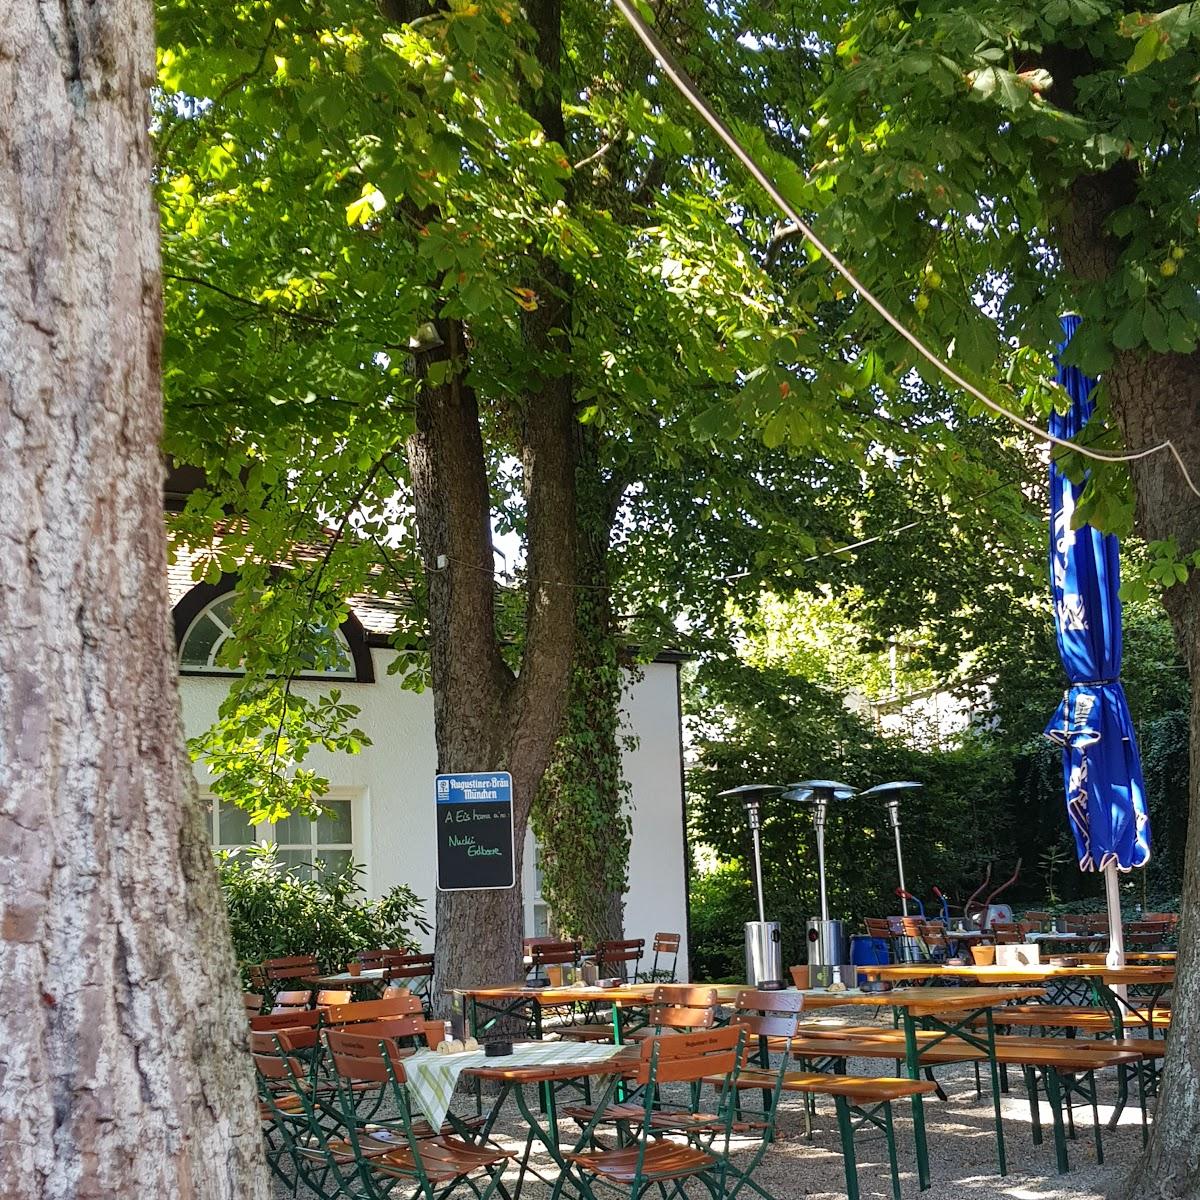 Restaurant "Biergarten Auf der Schanze" in  Cham